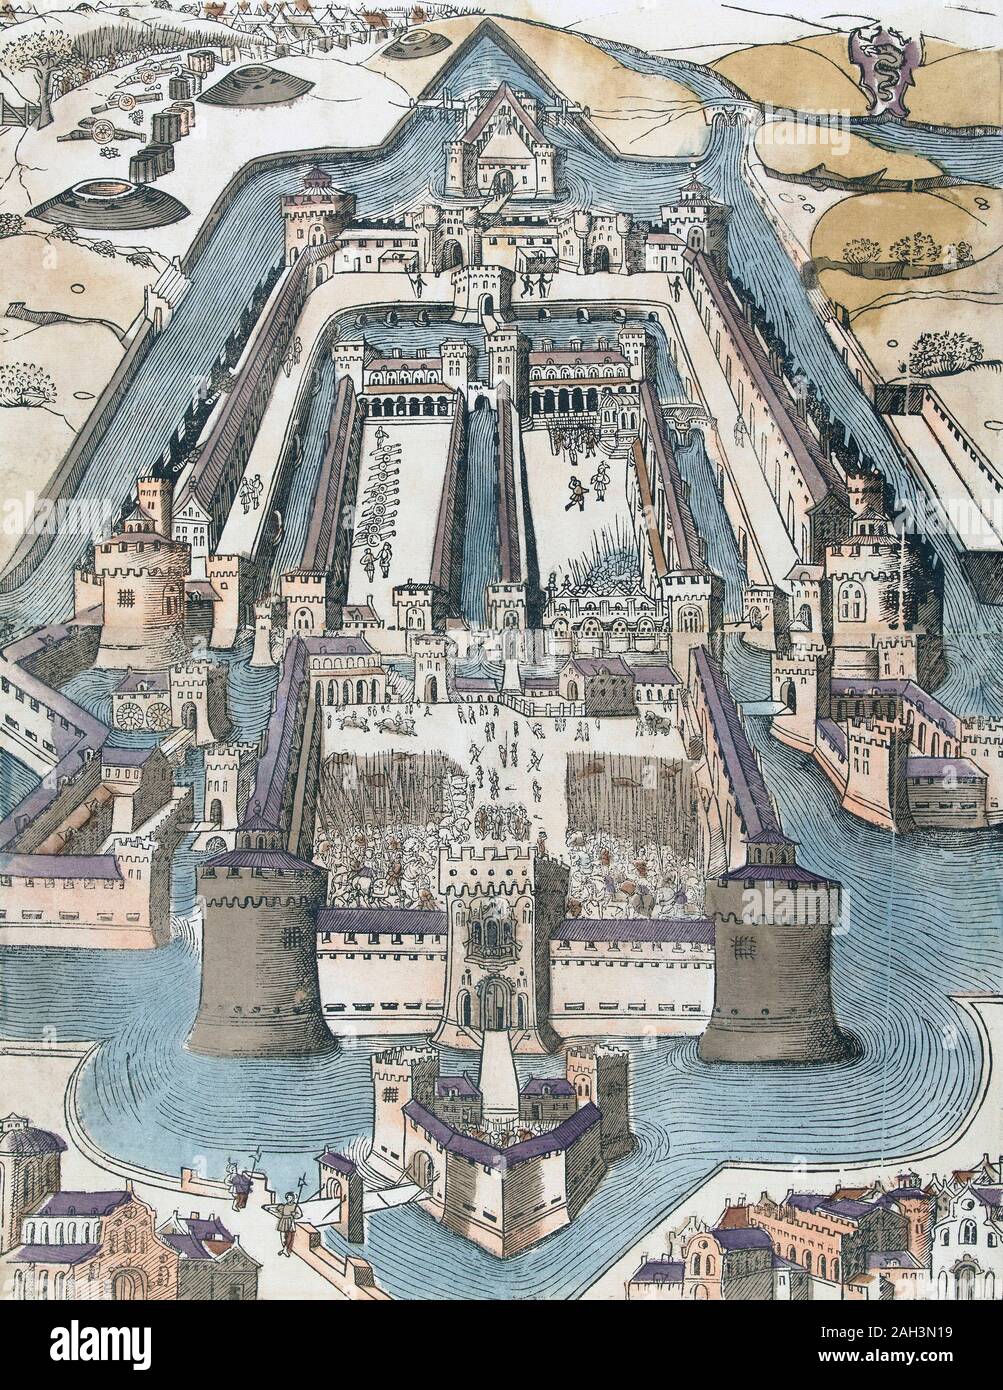 Vista elevada del castillo Sforza, en Milán, Italia. Tras un anónimo siglo xvi imprimir. Posteriormente coloreado. Foto de stock